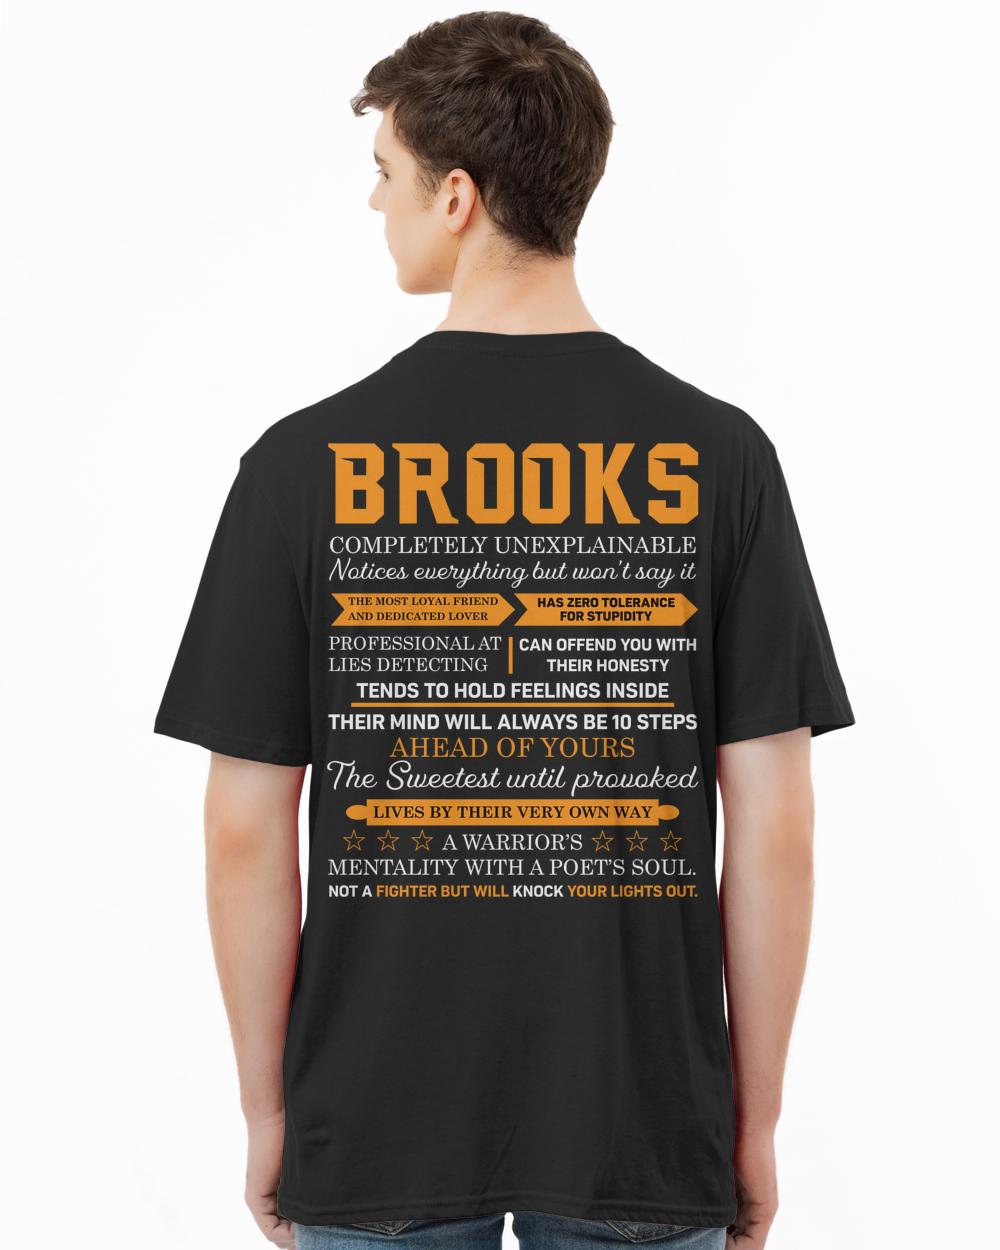 BROOKS-13K-N1-01